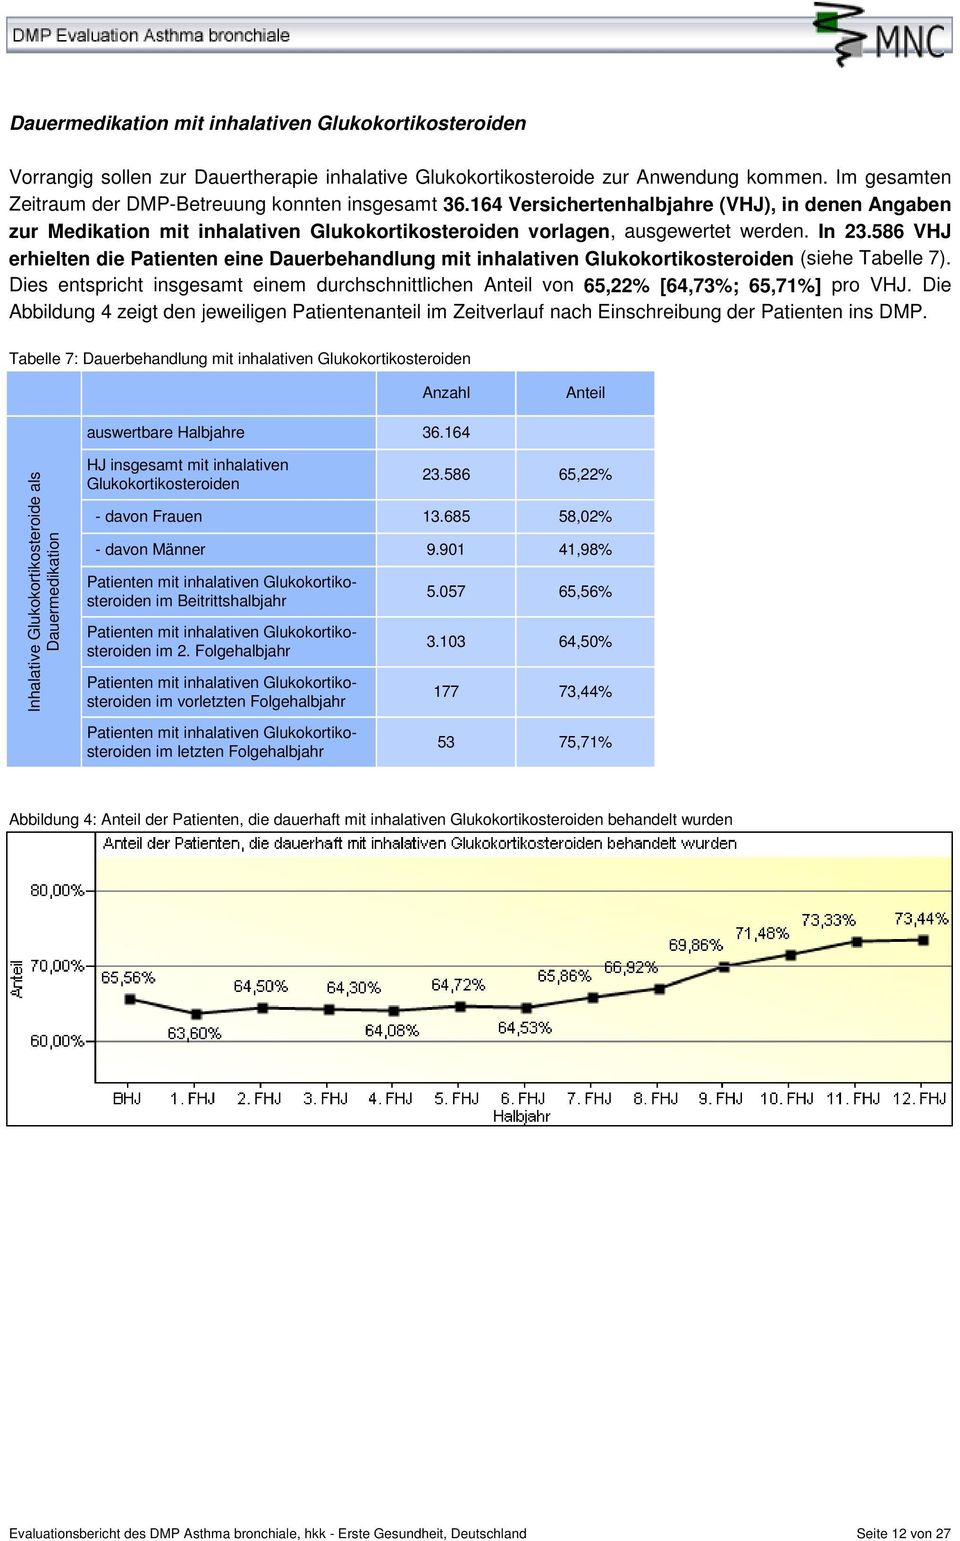 586 VHJ erhielten die Patienten eine Dauerbehandlung mit inhalativen Glukokortikosteroiden (siehe Tabelle 7). Dies entspricht insgesamt einem durchschnittlichen von 65,22% [64,73%; 65,71%] pro VHJ.